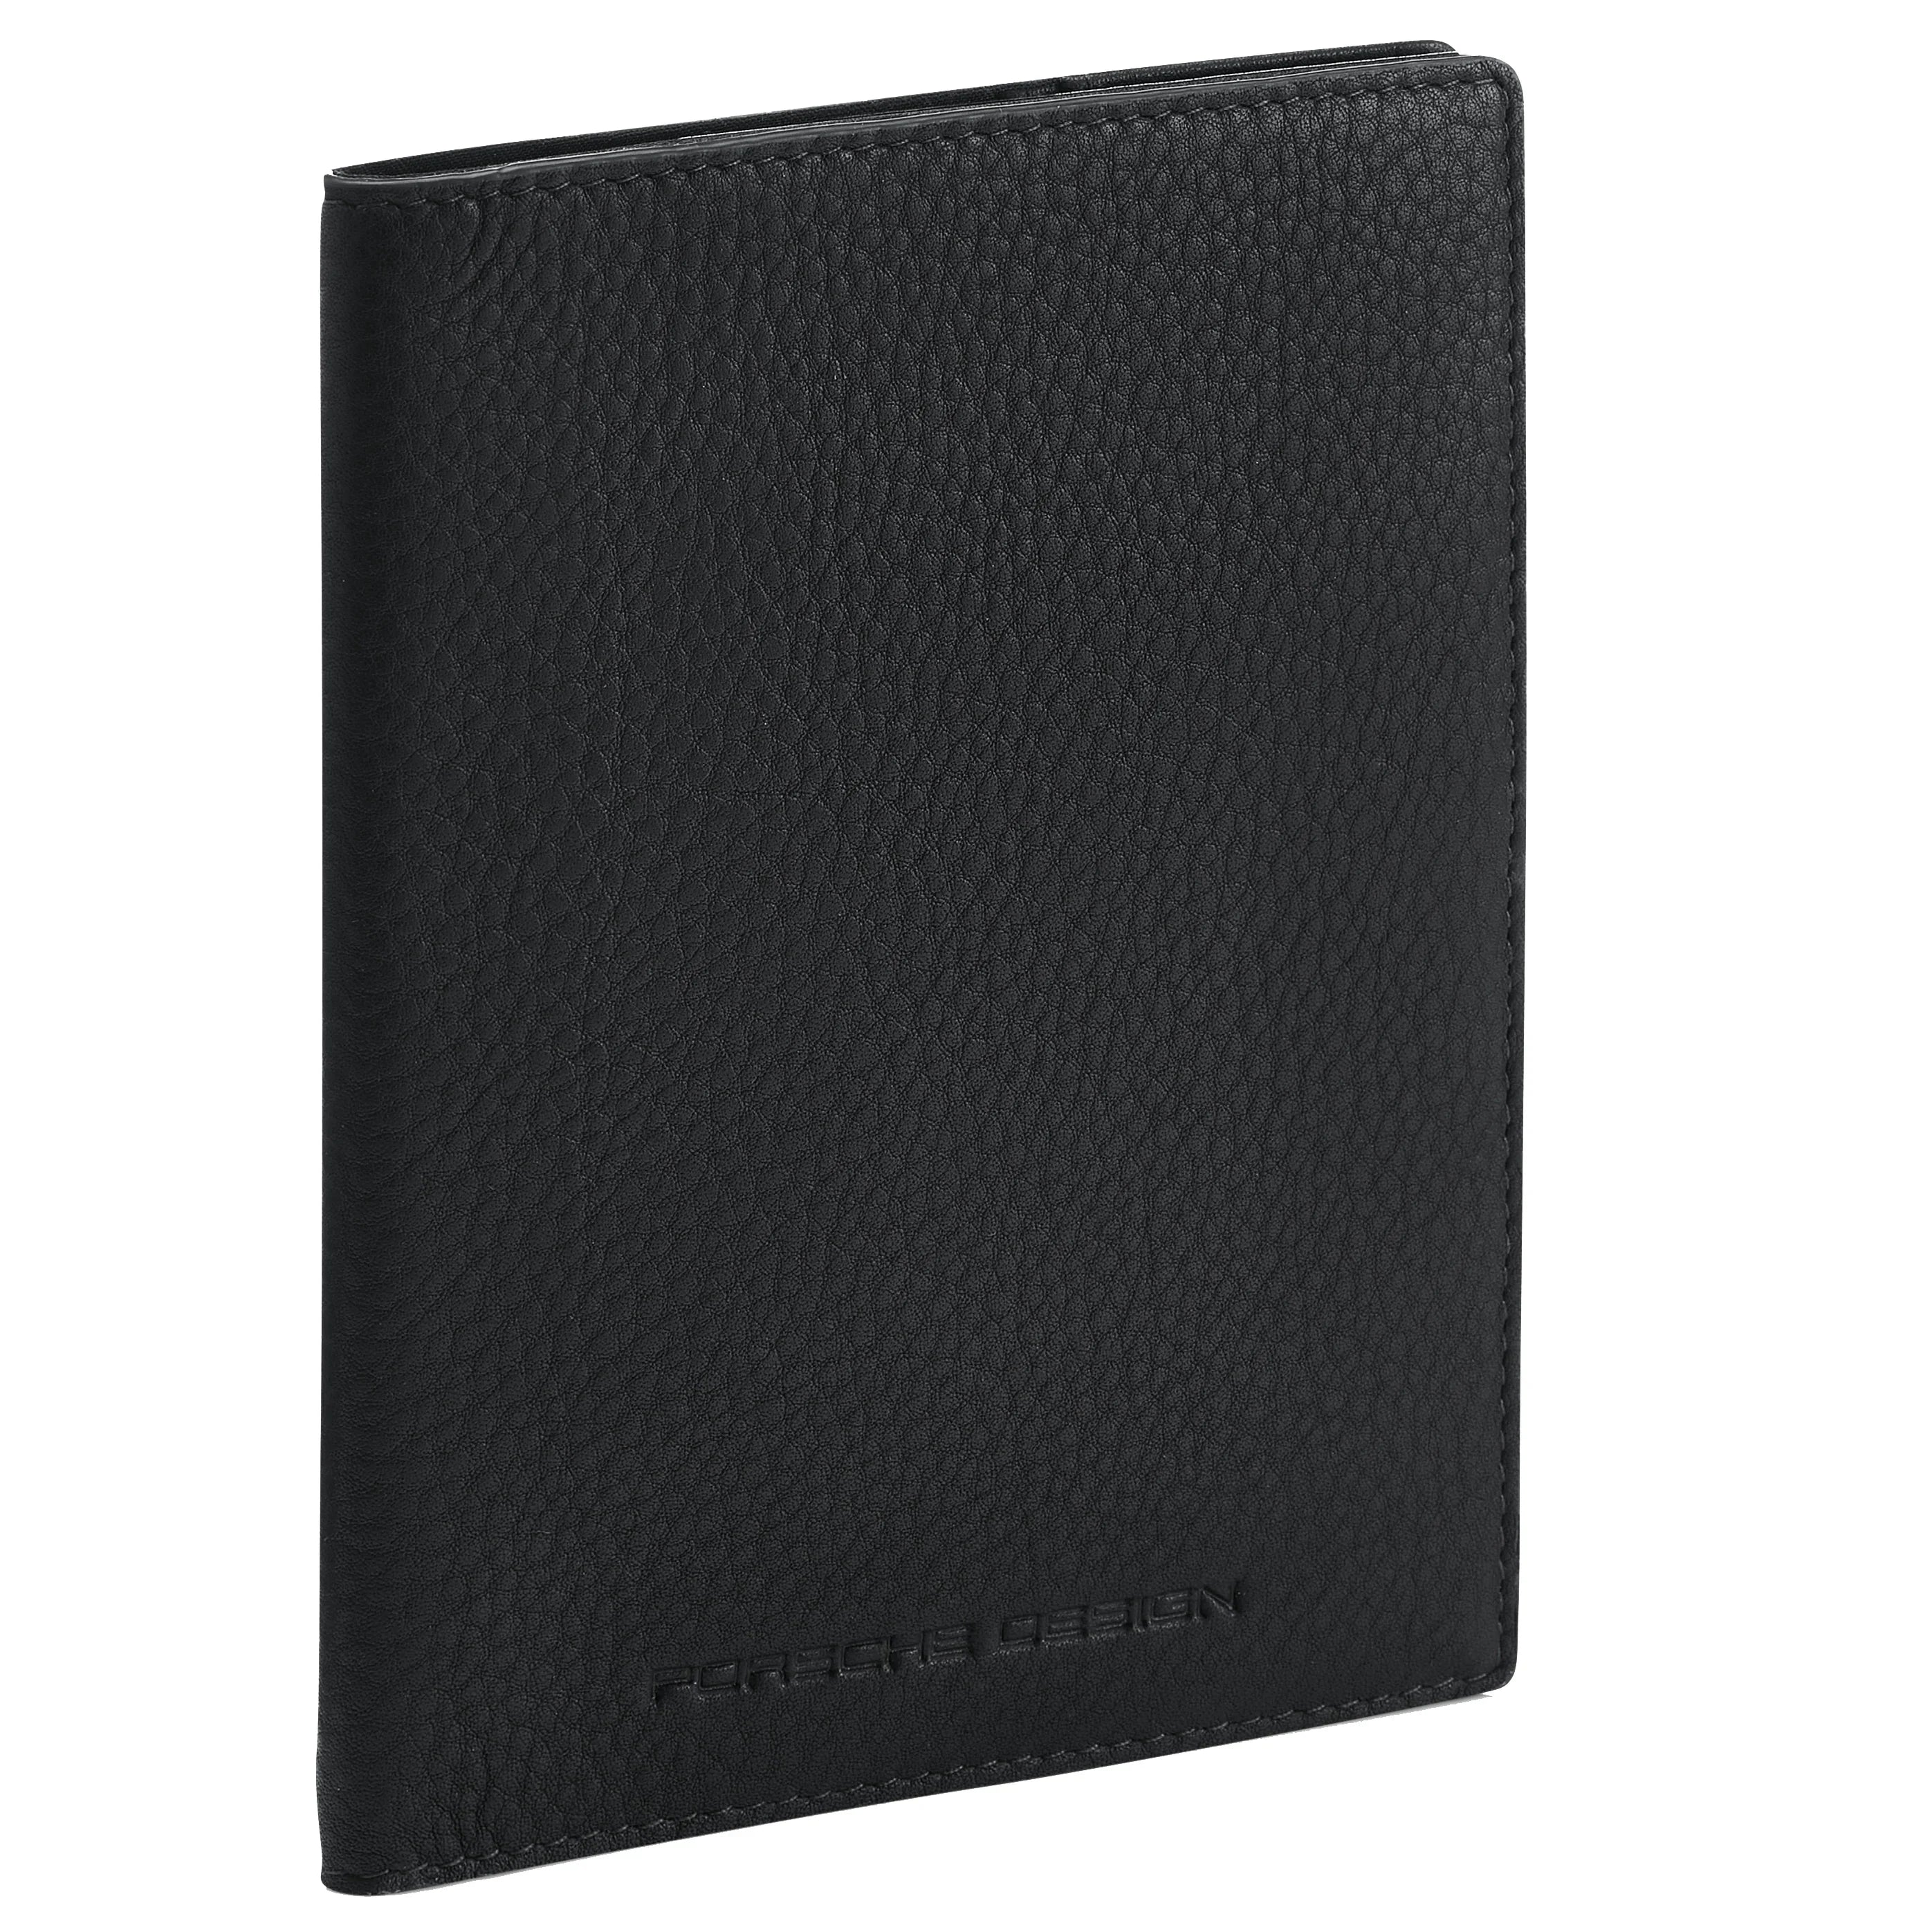 Porsche Design Accessories Business Passport Holder RFID 14 cm - Black